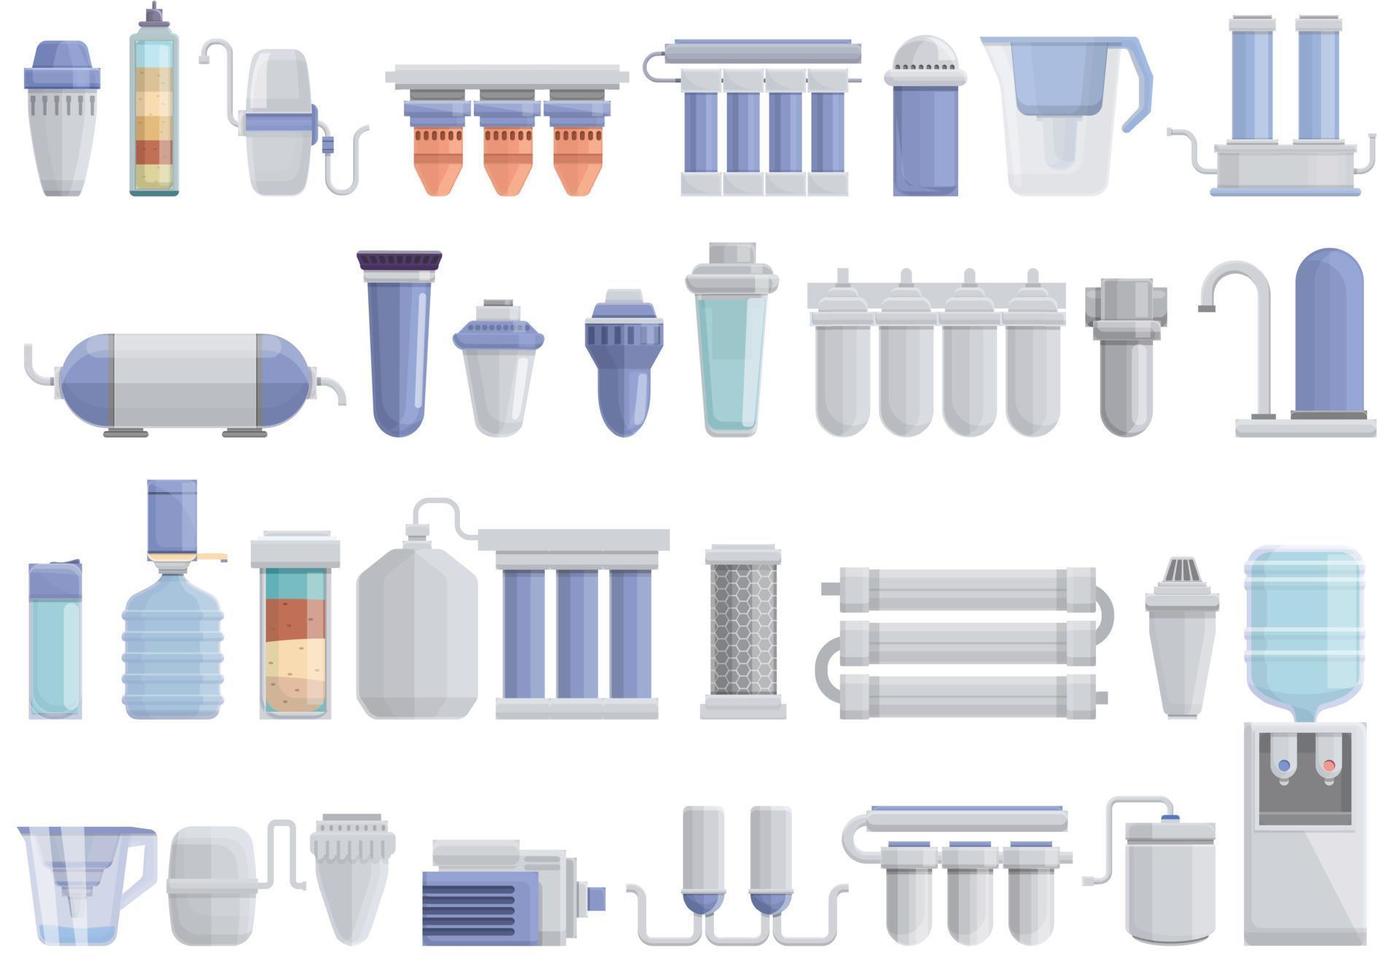 apparatuur voor waterzuivering iconen set, cartoon stijl vector